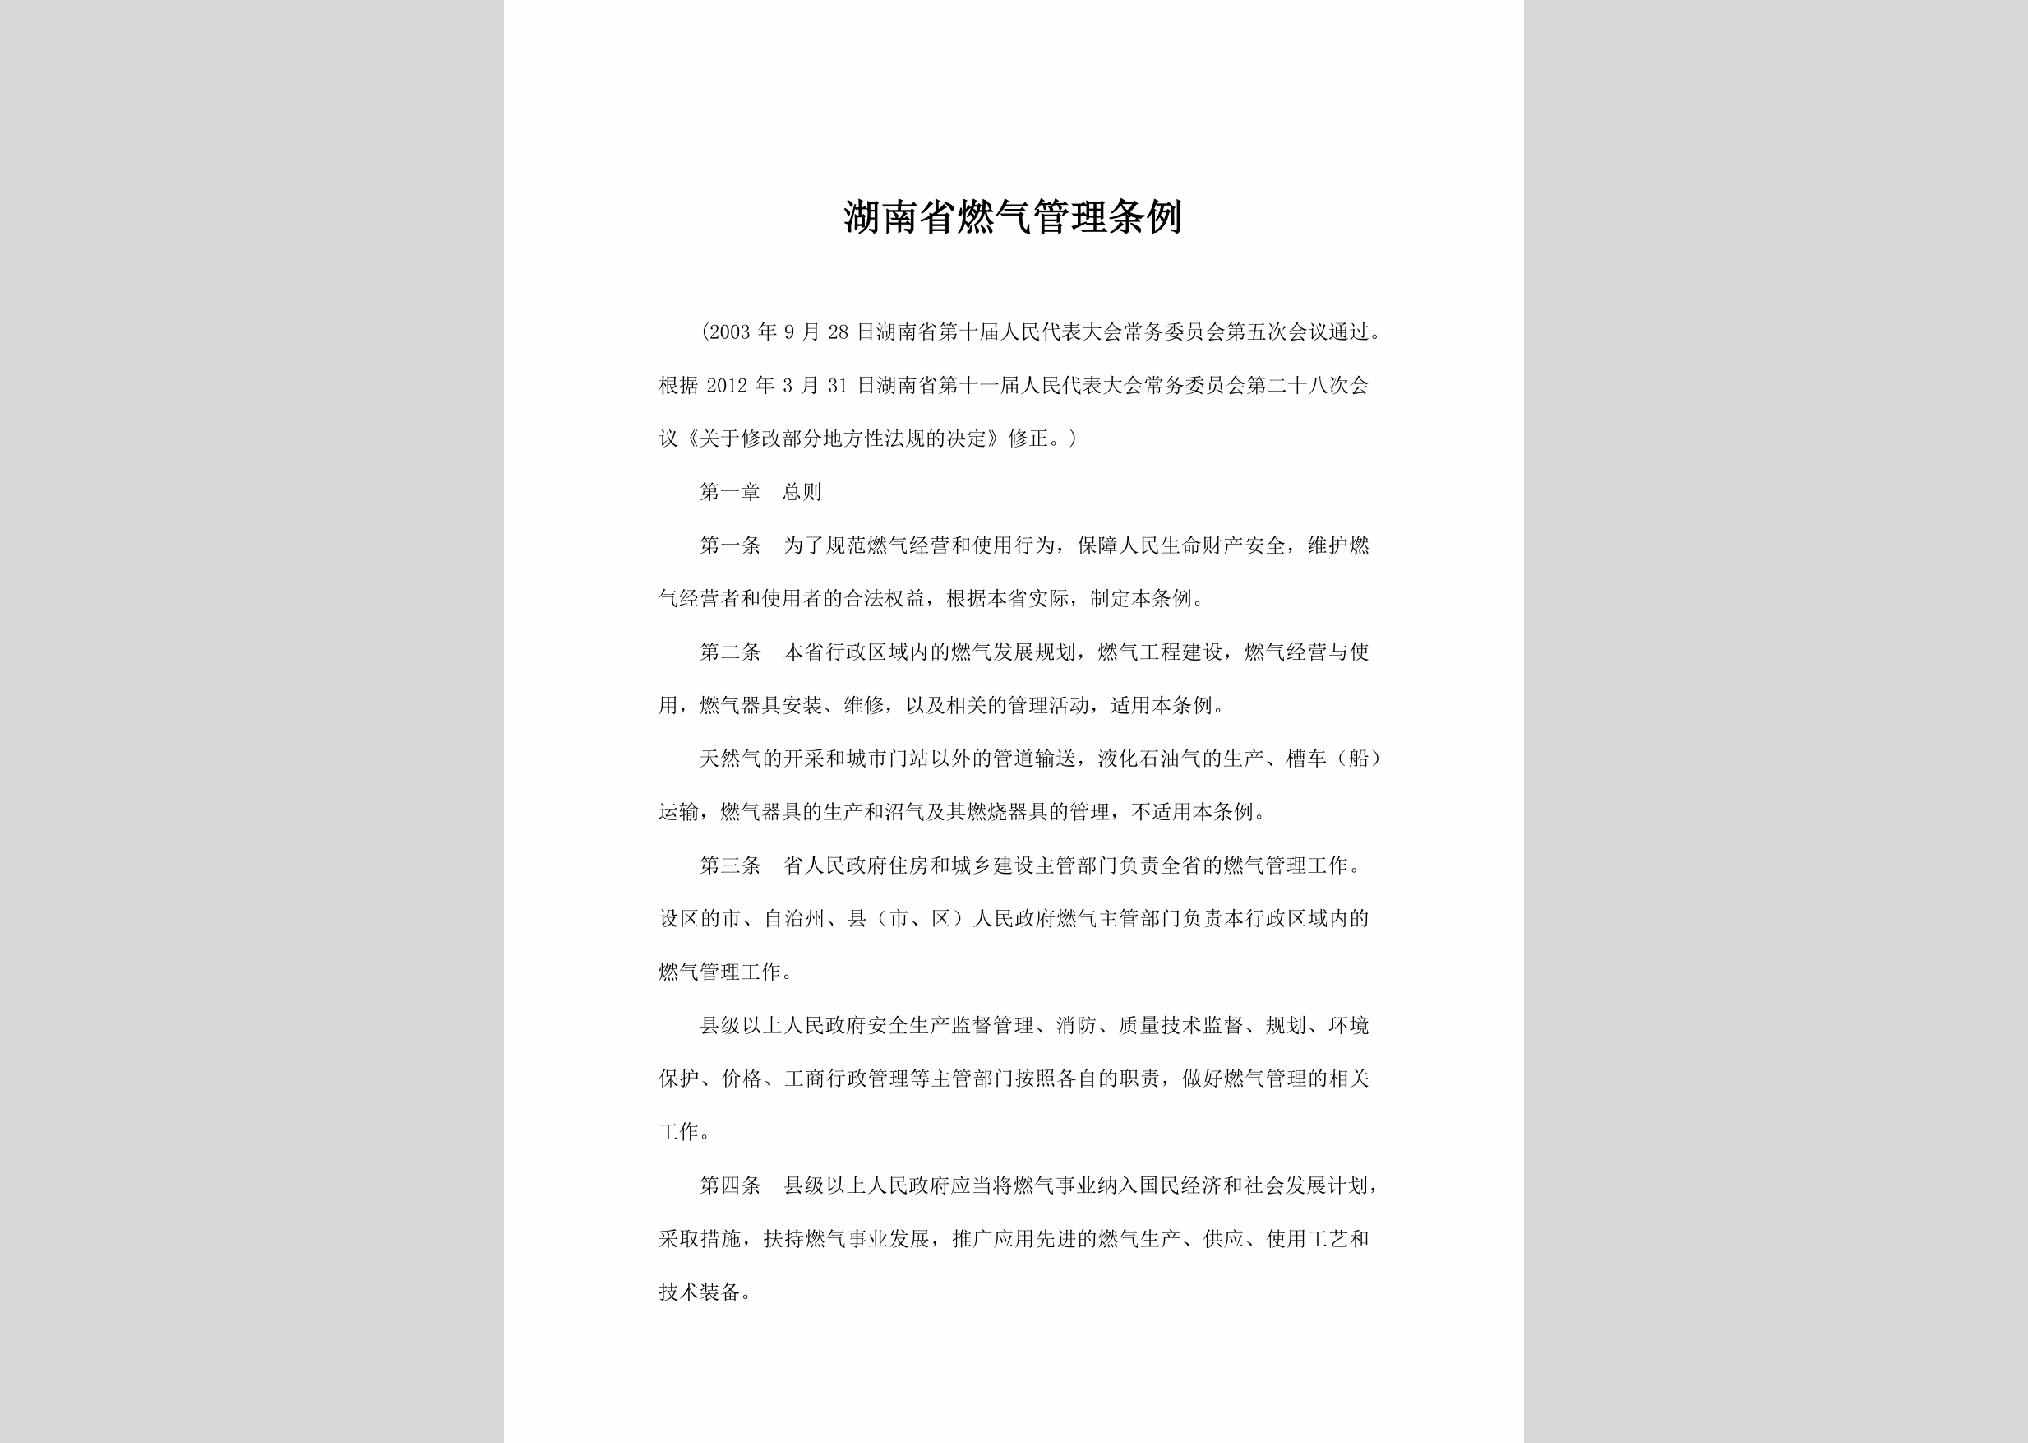 HUN-RQGLTL-2012：湖南省燃气管理条例